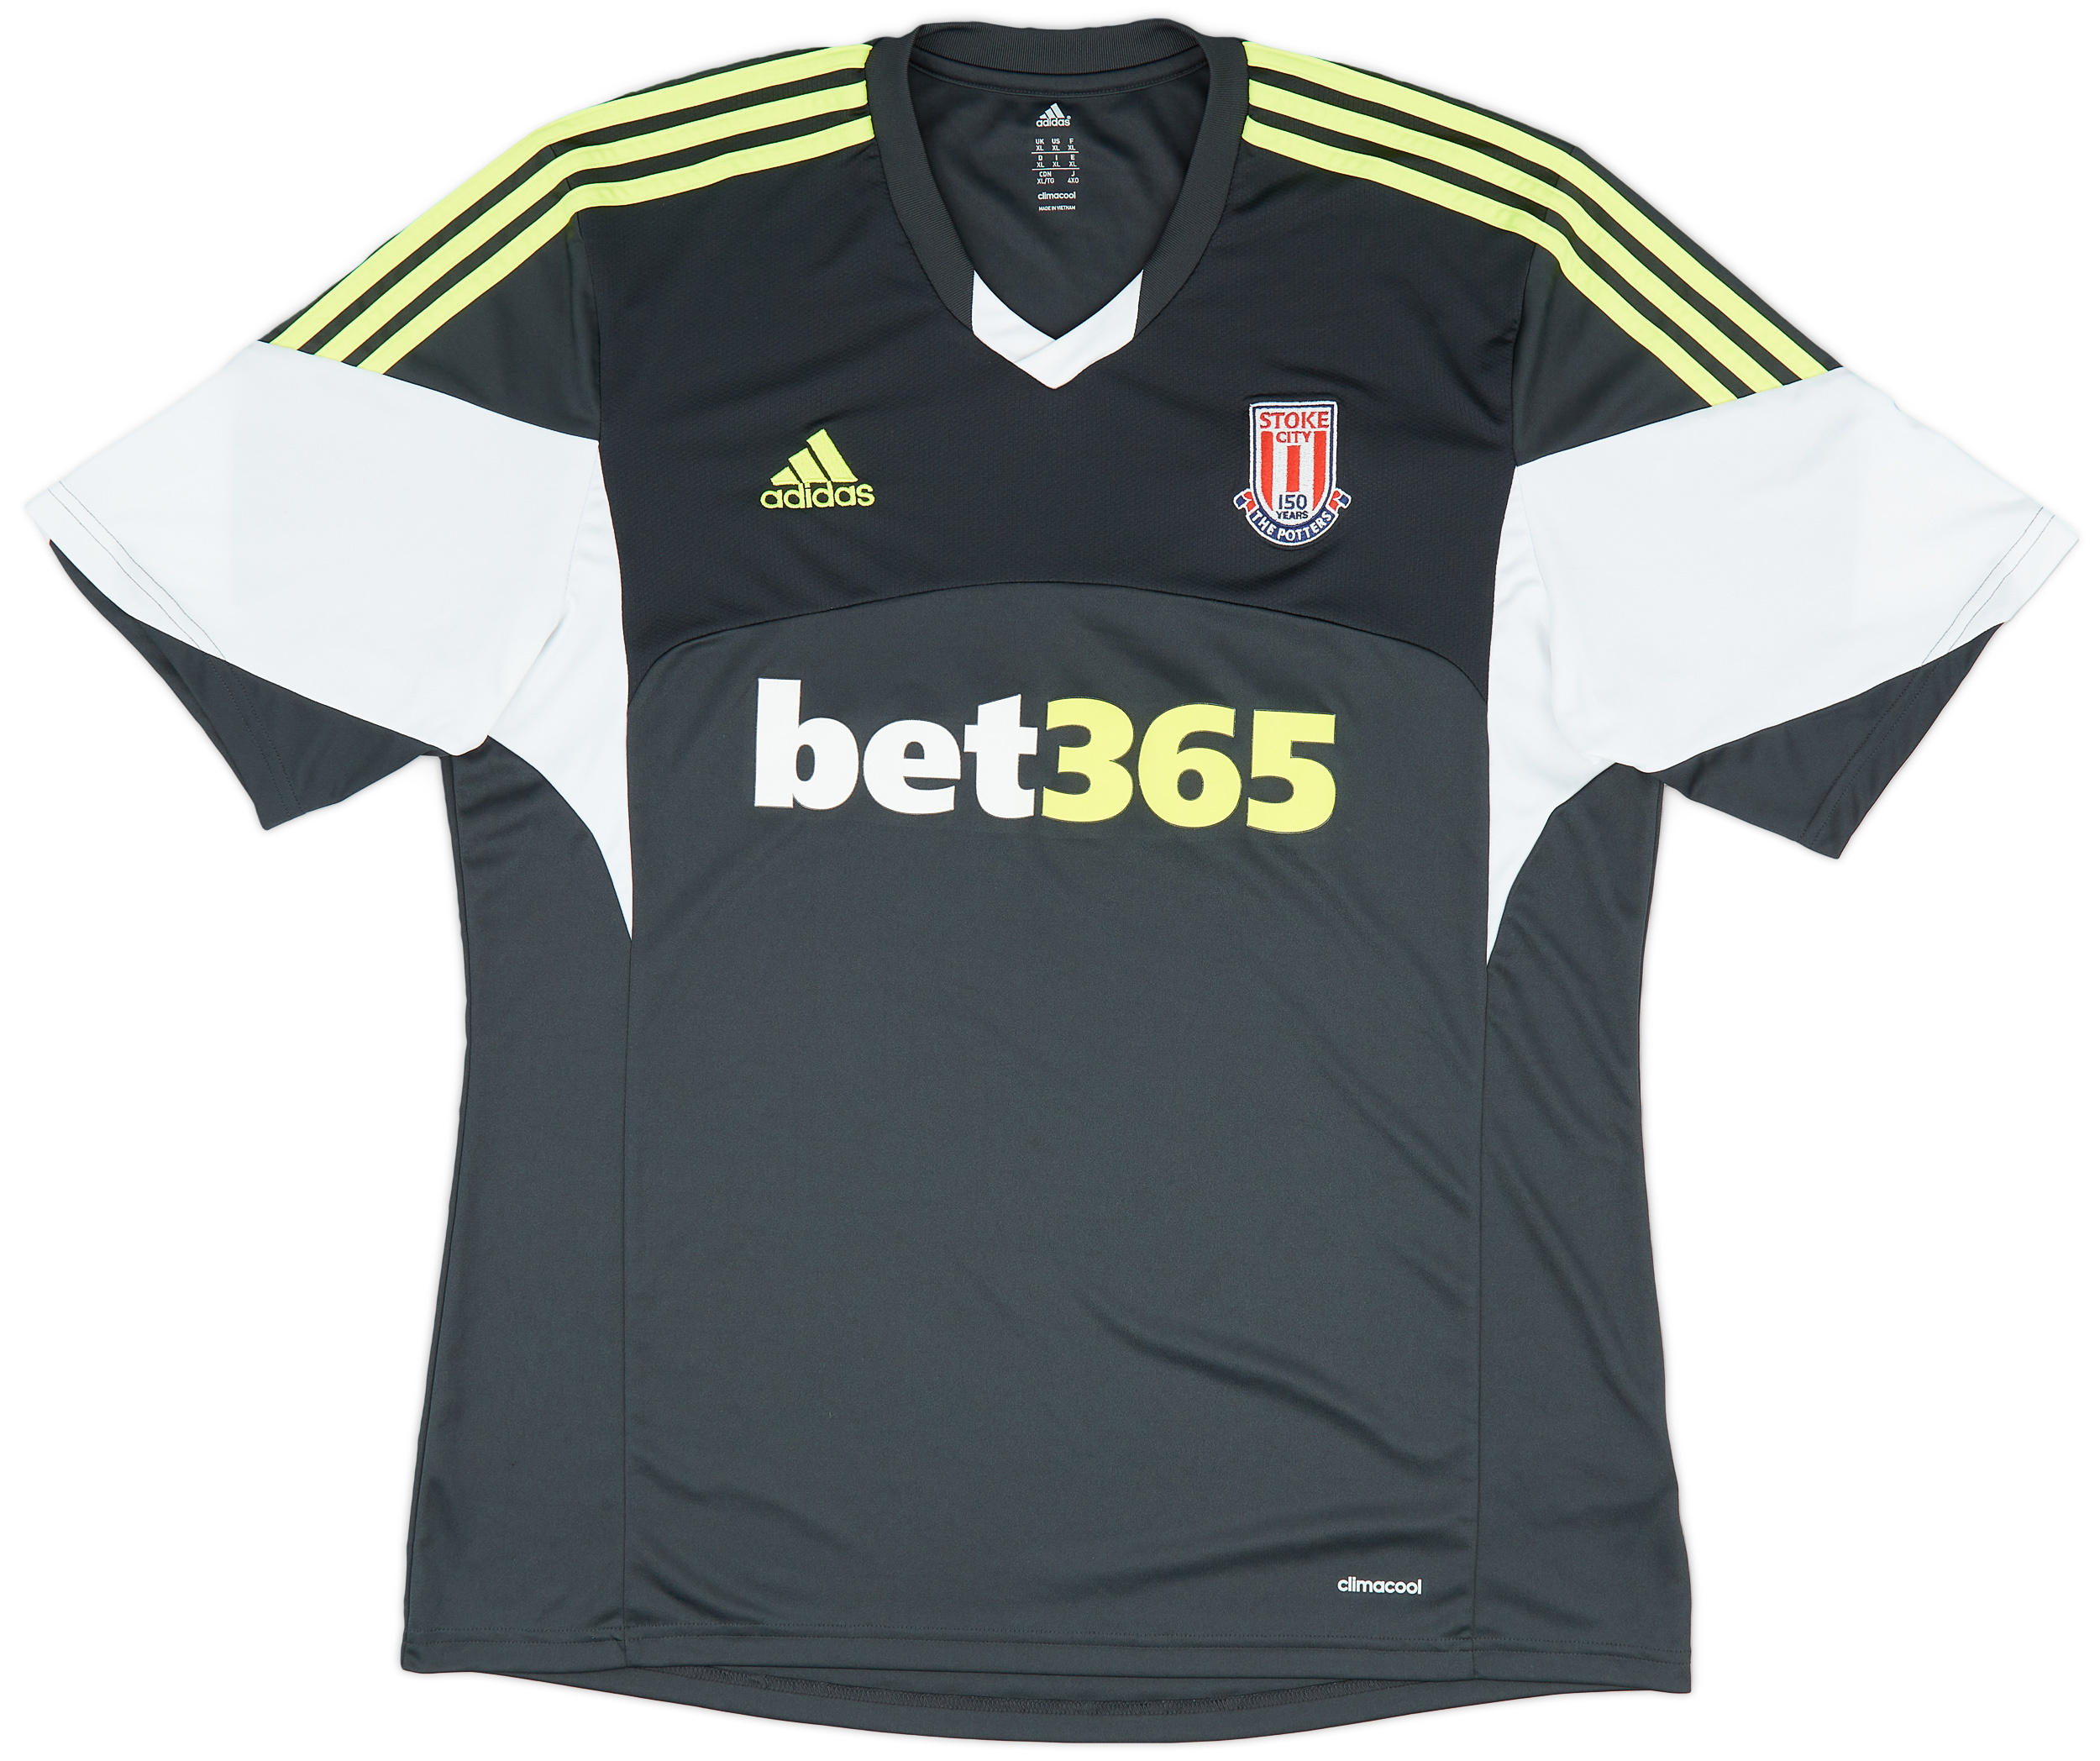 2013-14 Stoke City '150 Years' Away Shirt - 10/10 - ()